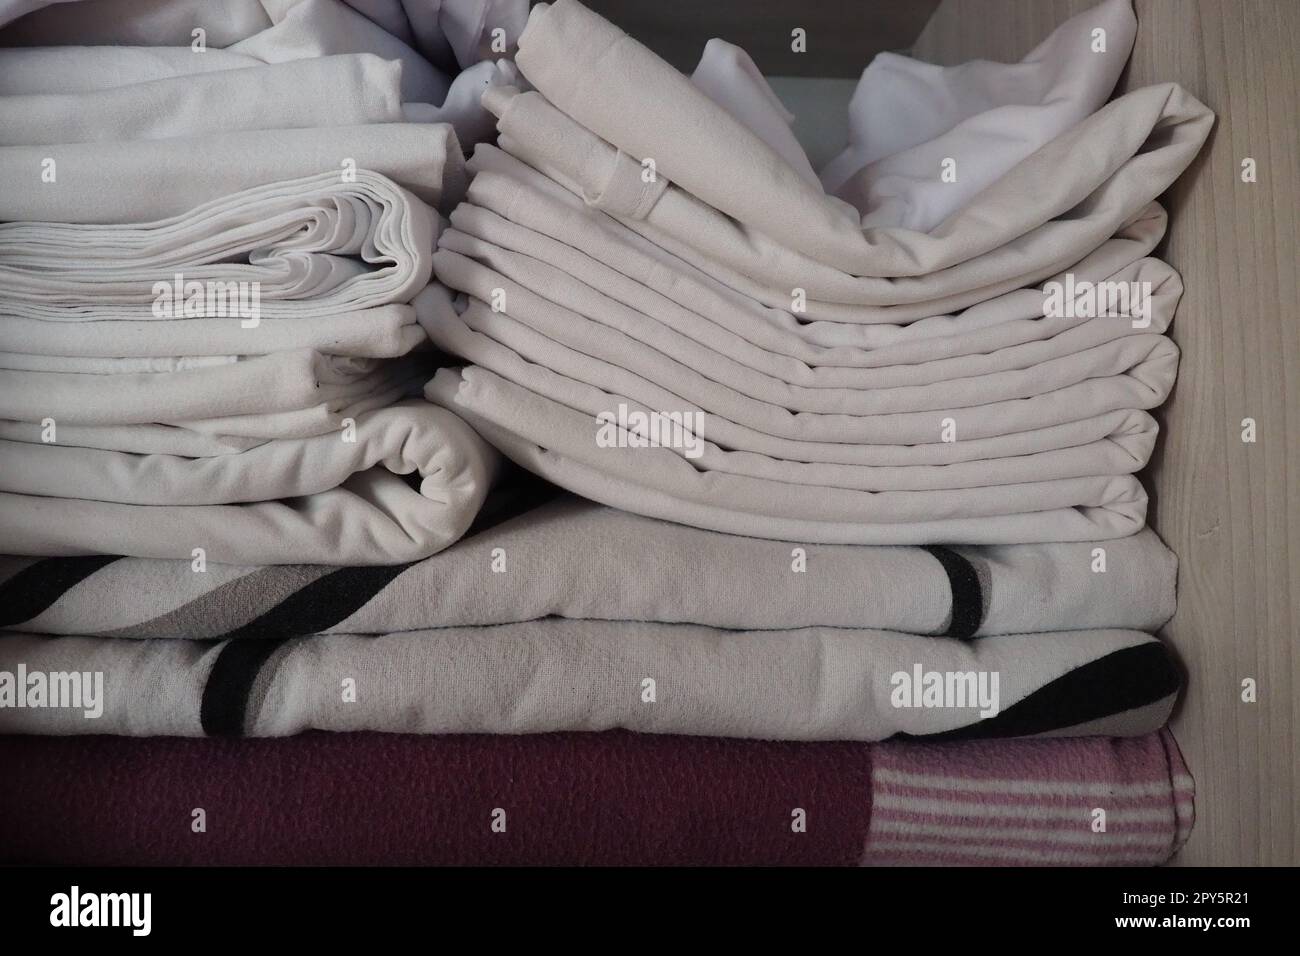 Le lenzuola bianche sono impilate nell'armadio. Contenuto interno di un armadio in lino. Organizzazione familiare. Condizioni igieniche per il sonno. Tessuti e lenzuola in un armadio o guardaroba bianco a metà aperto Foto Stock